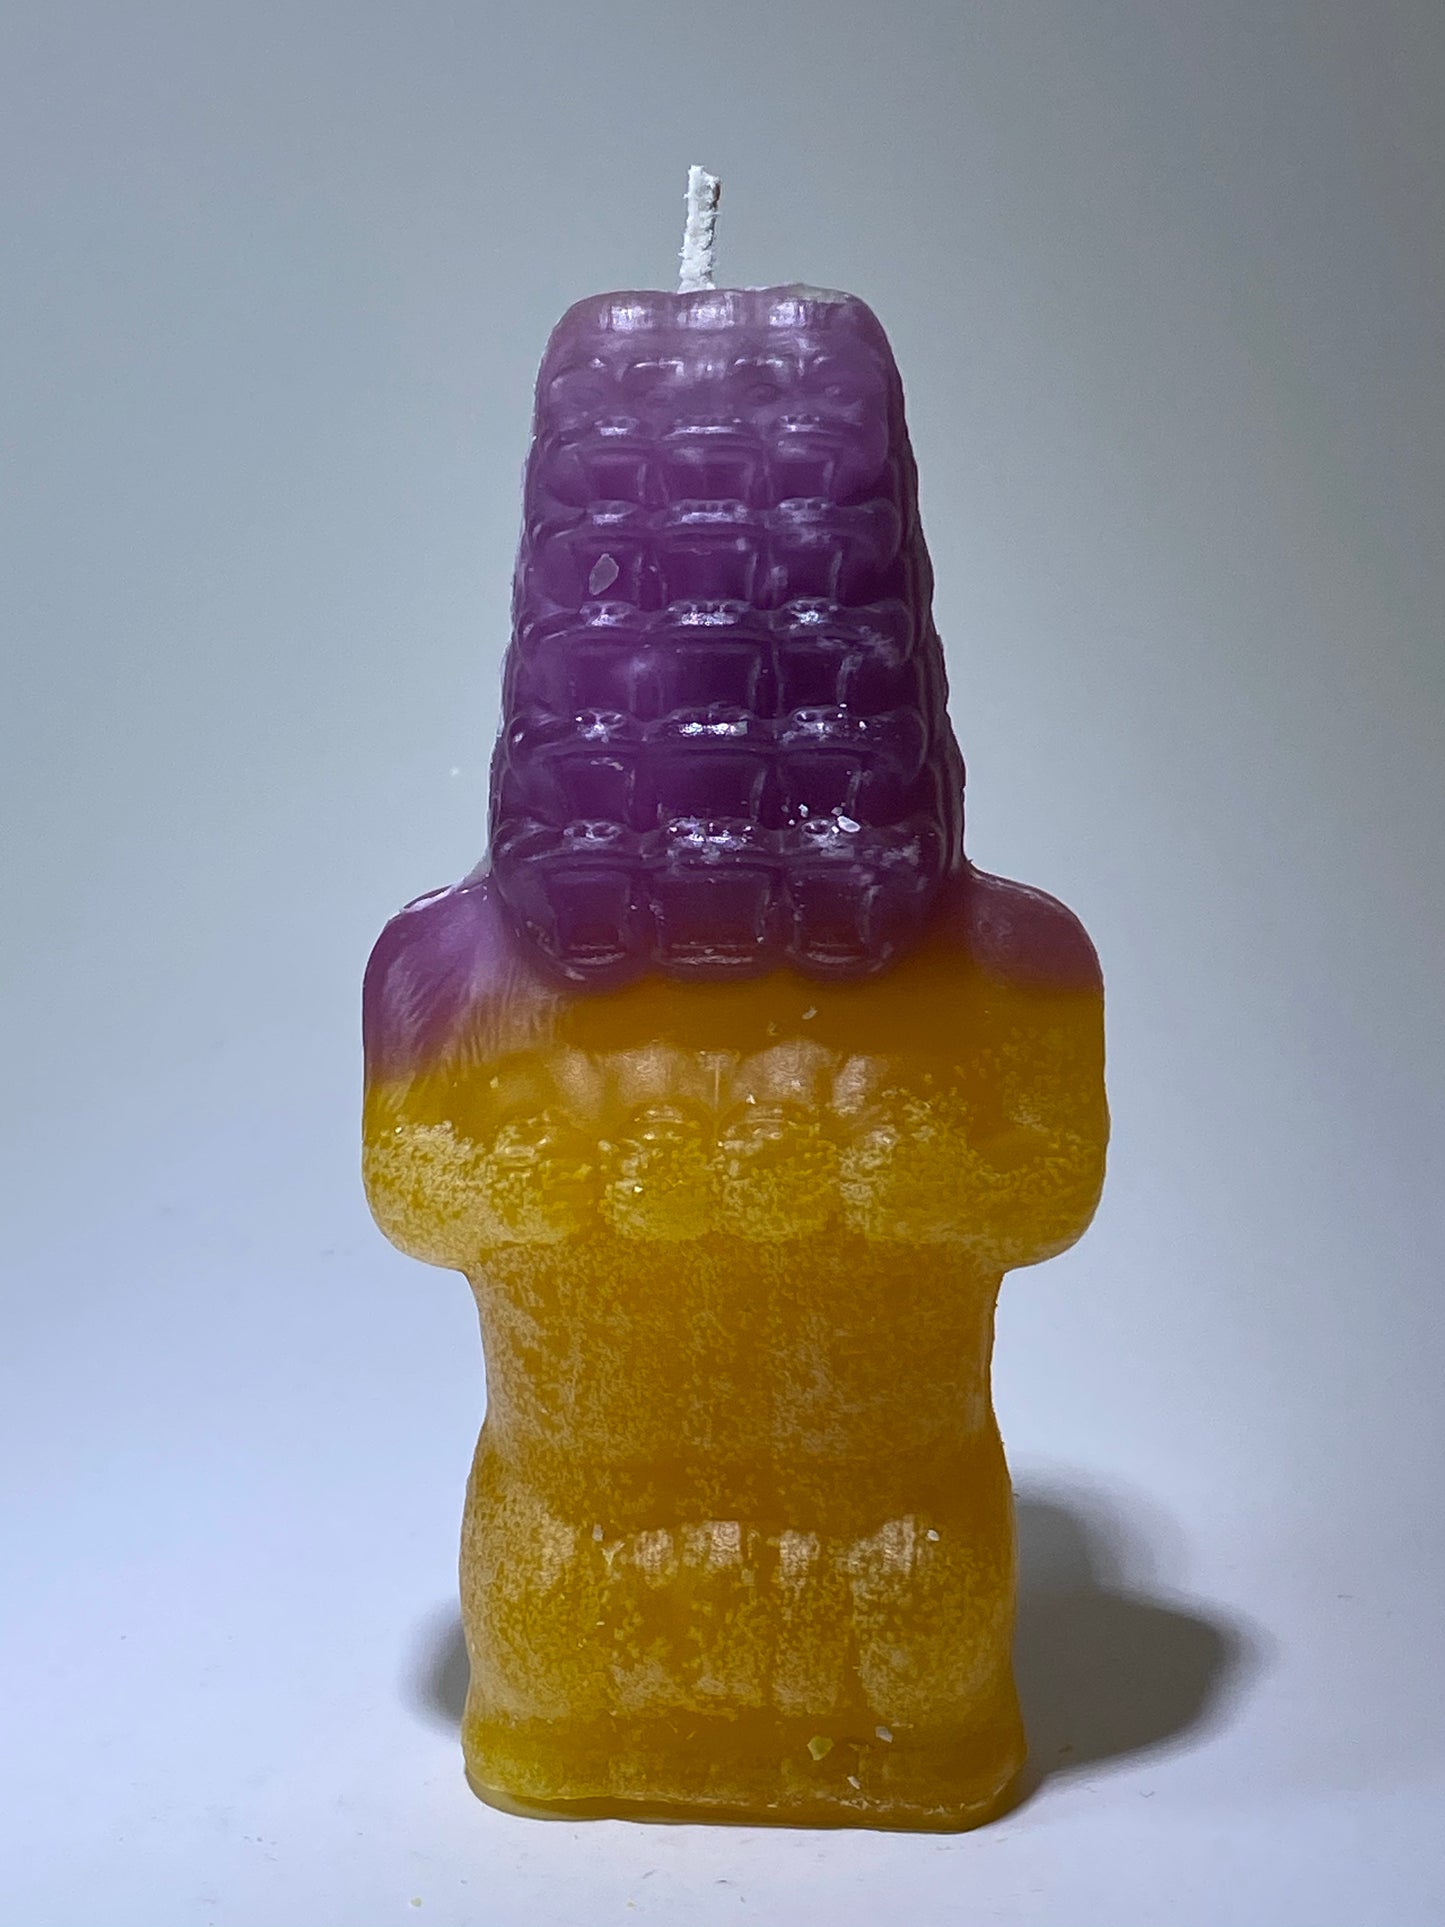 Zimot Novelty Candles: Purple/Yellow